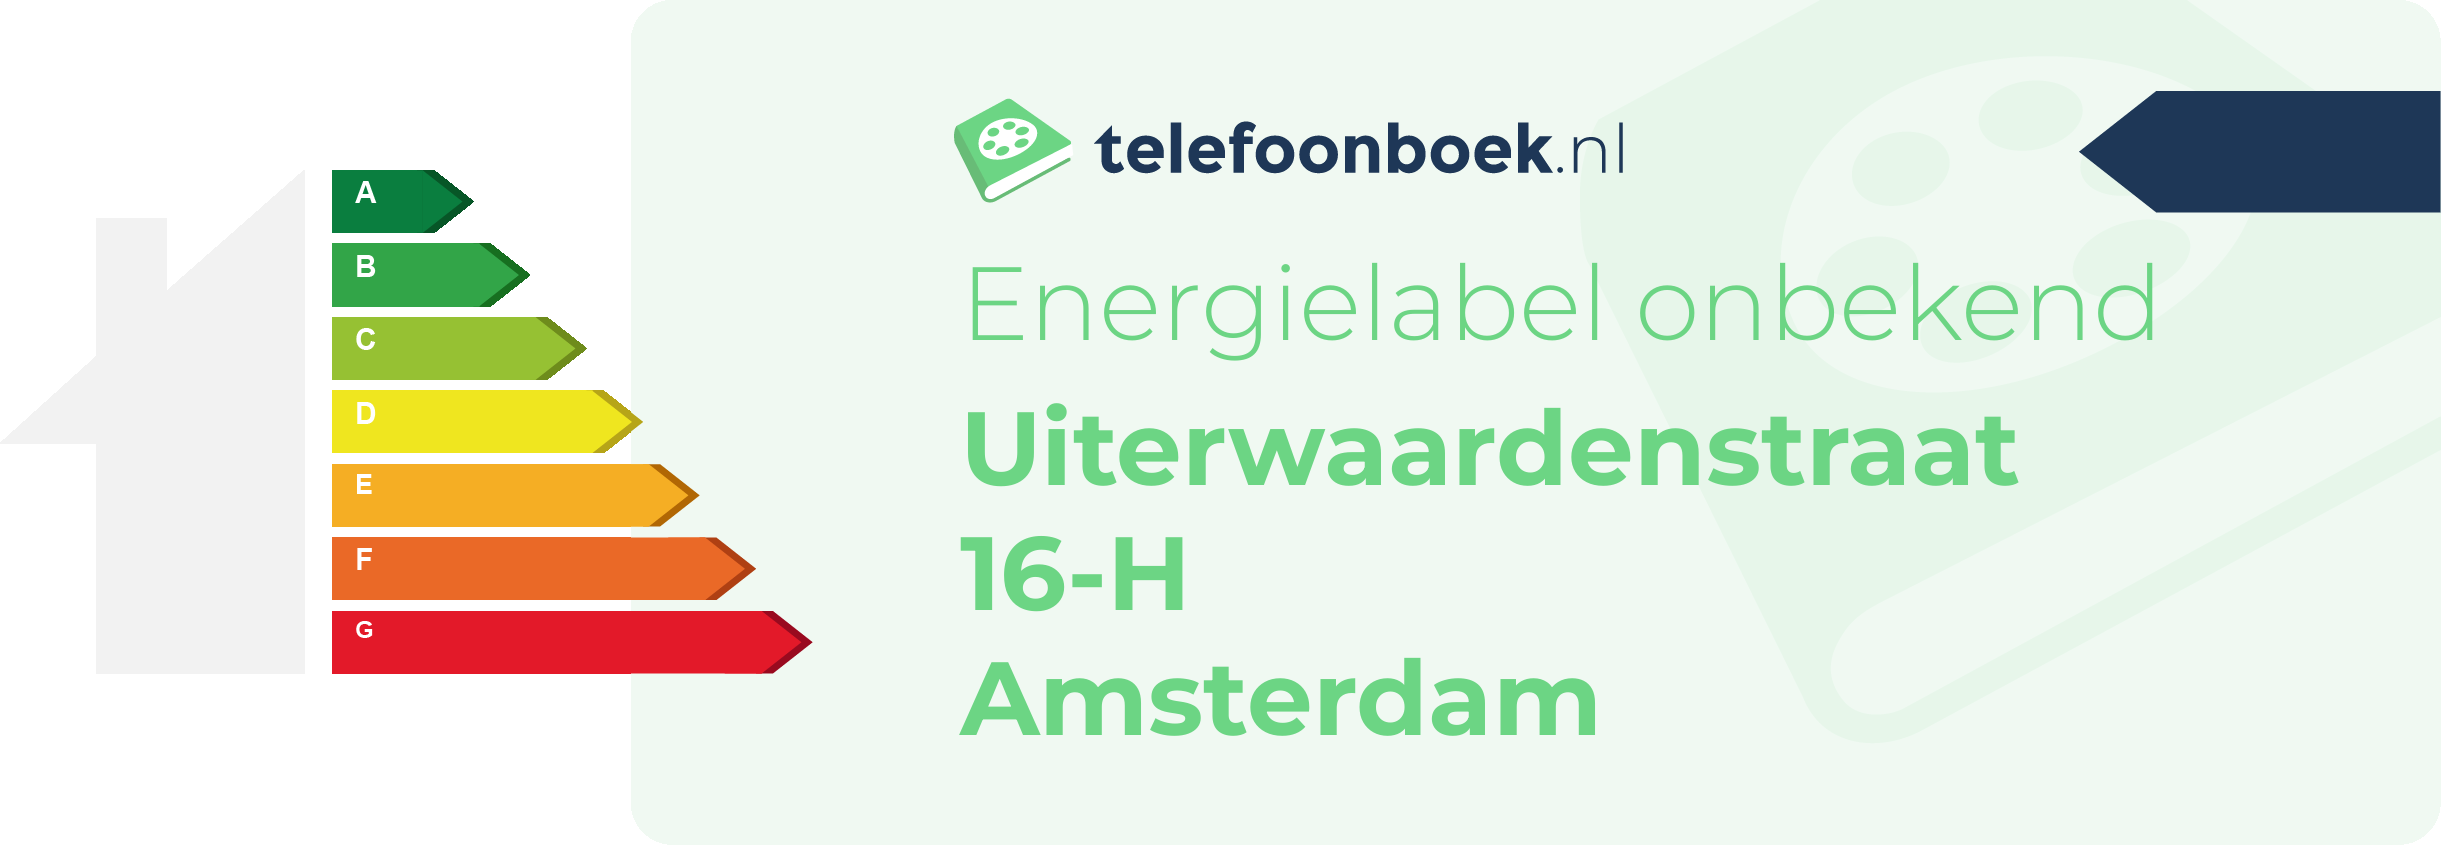 Energielabel Uiterwaardenstraat 16-H Amsterdam